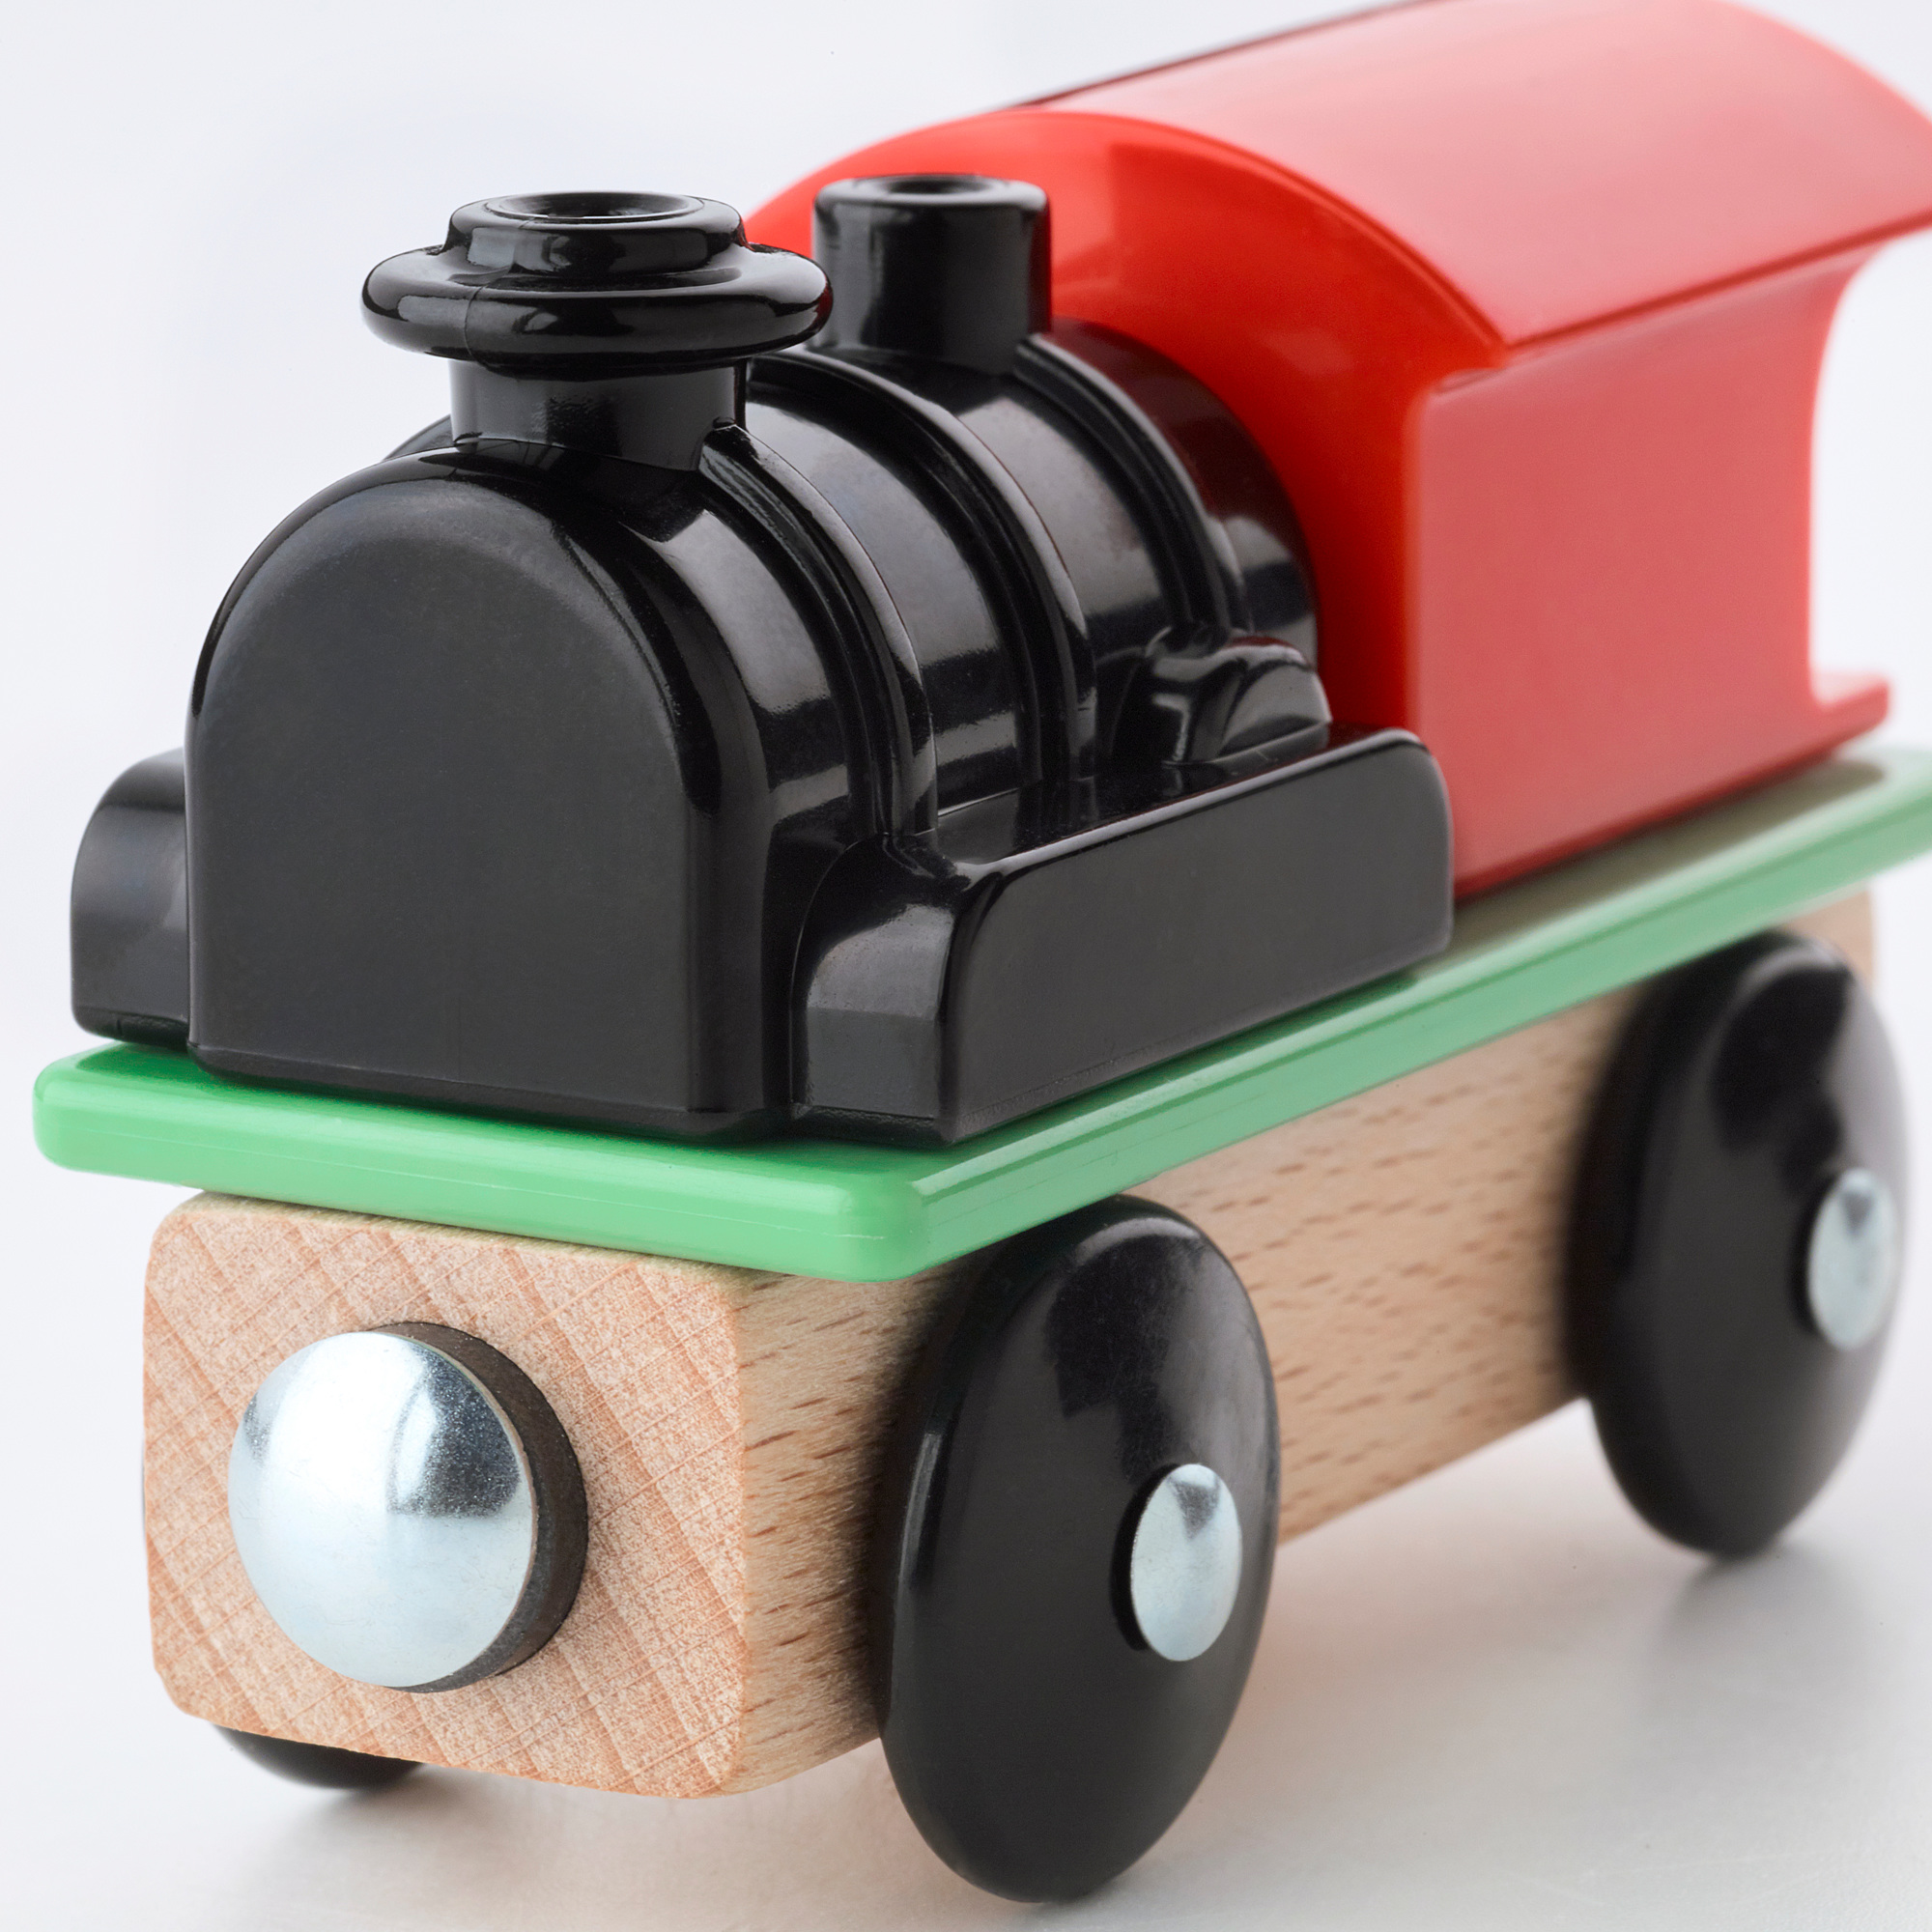 LILLABO 玩具火車 3件組